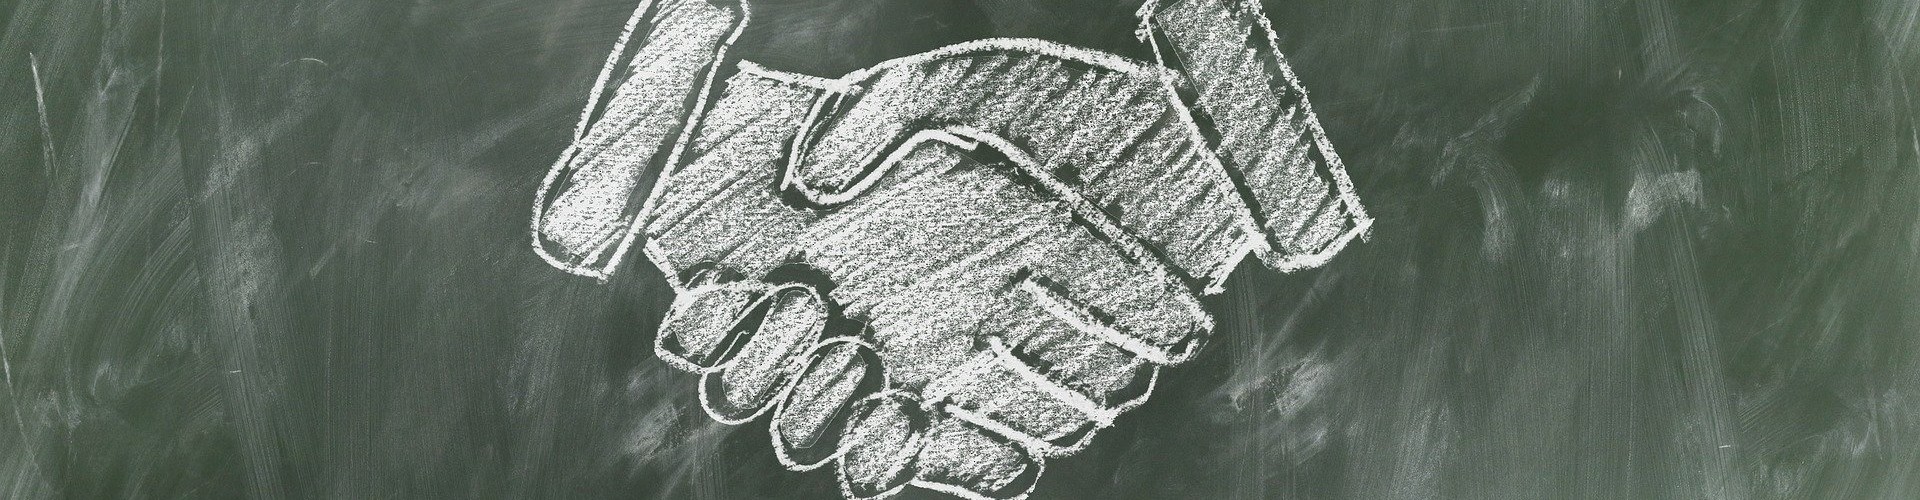 Shaking hands drawn on blackboard in chalk